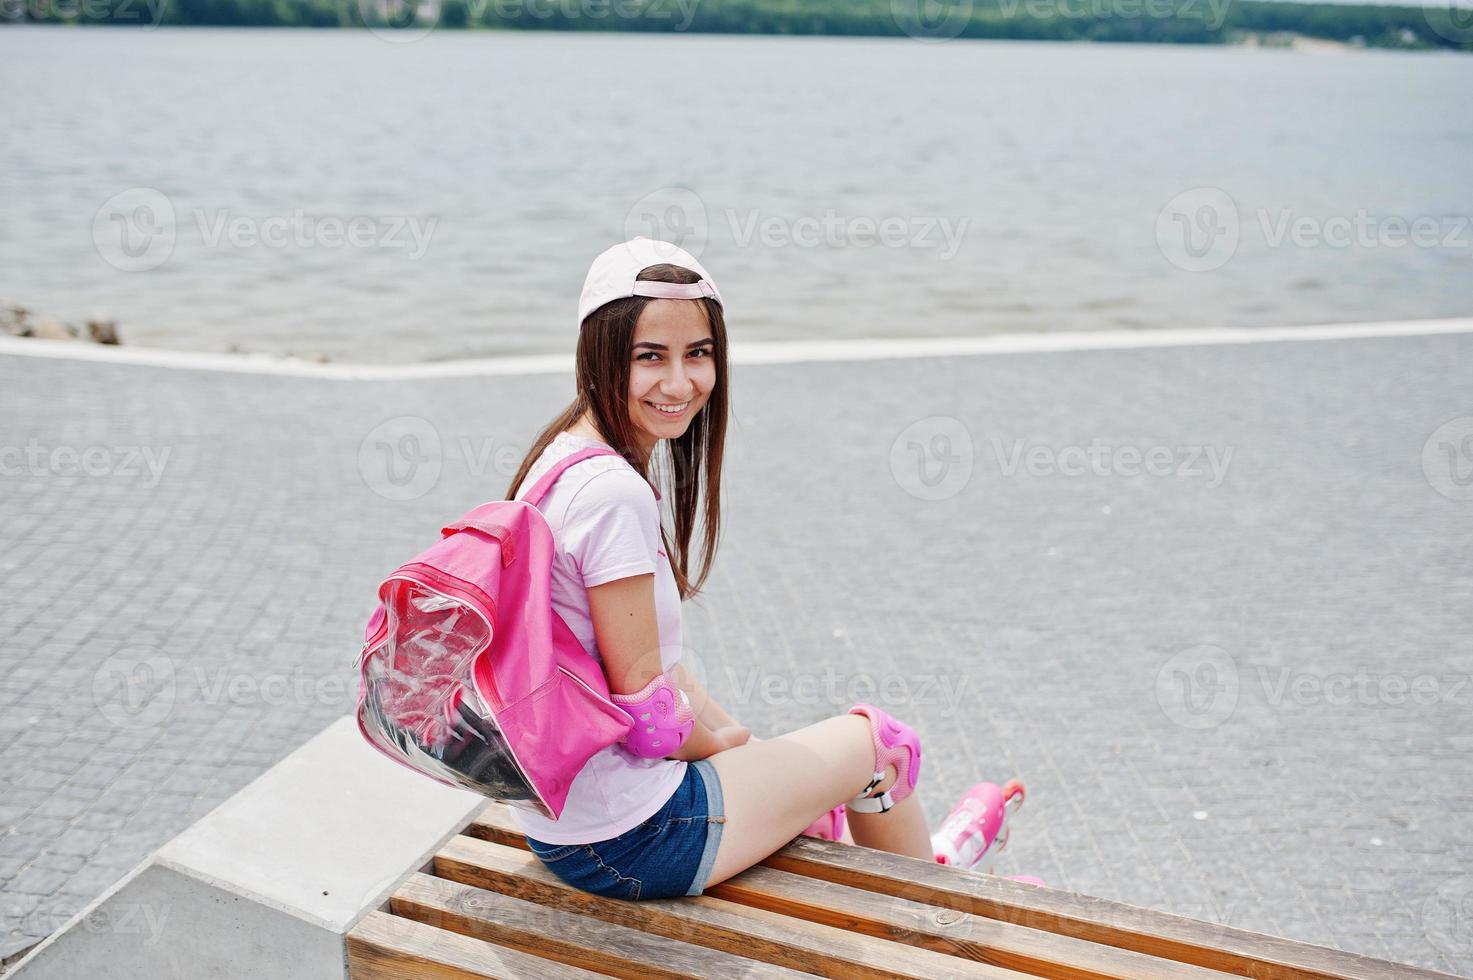 fantastisk ung kvinna i lediga kläder och keps sitter på bänken i skateparken med rullskridskor på. foto